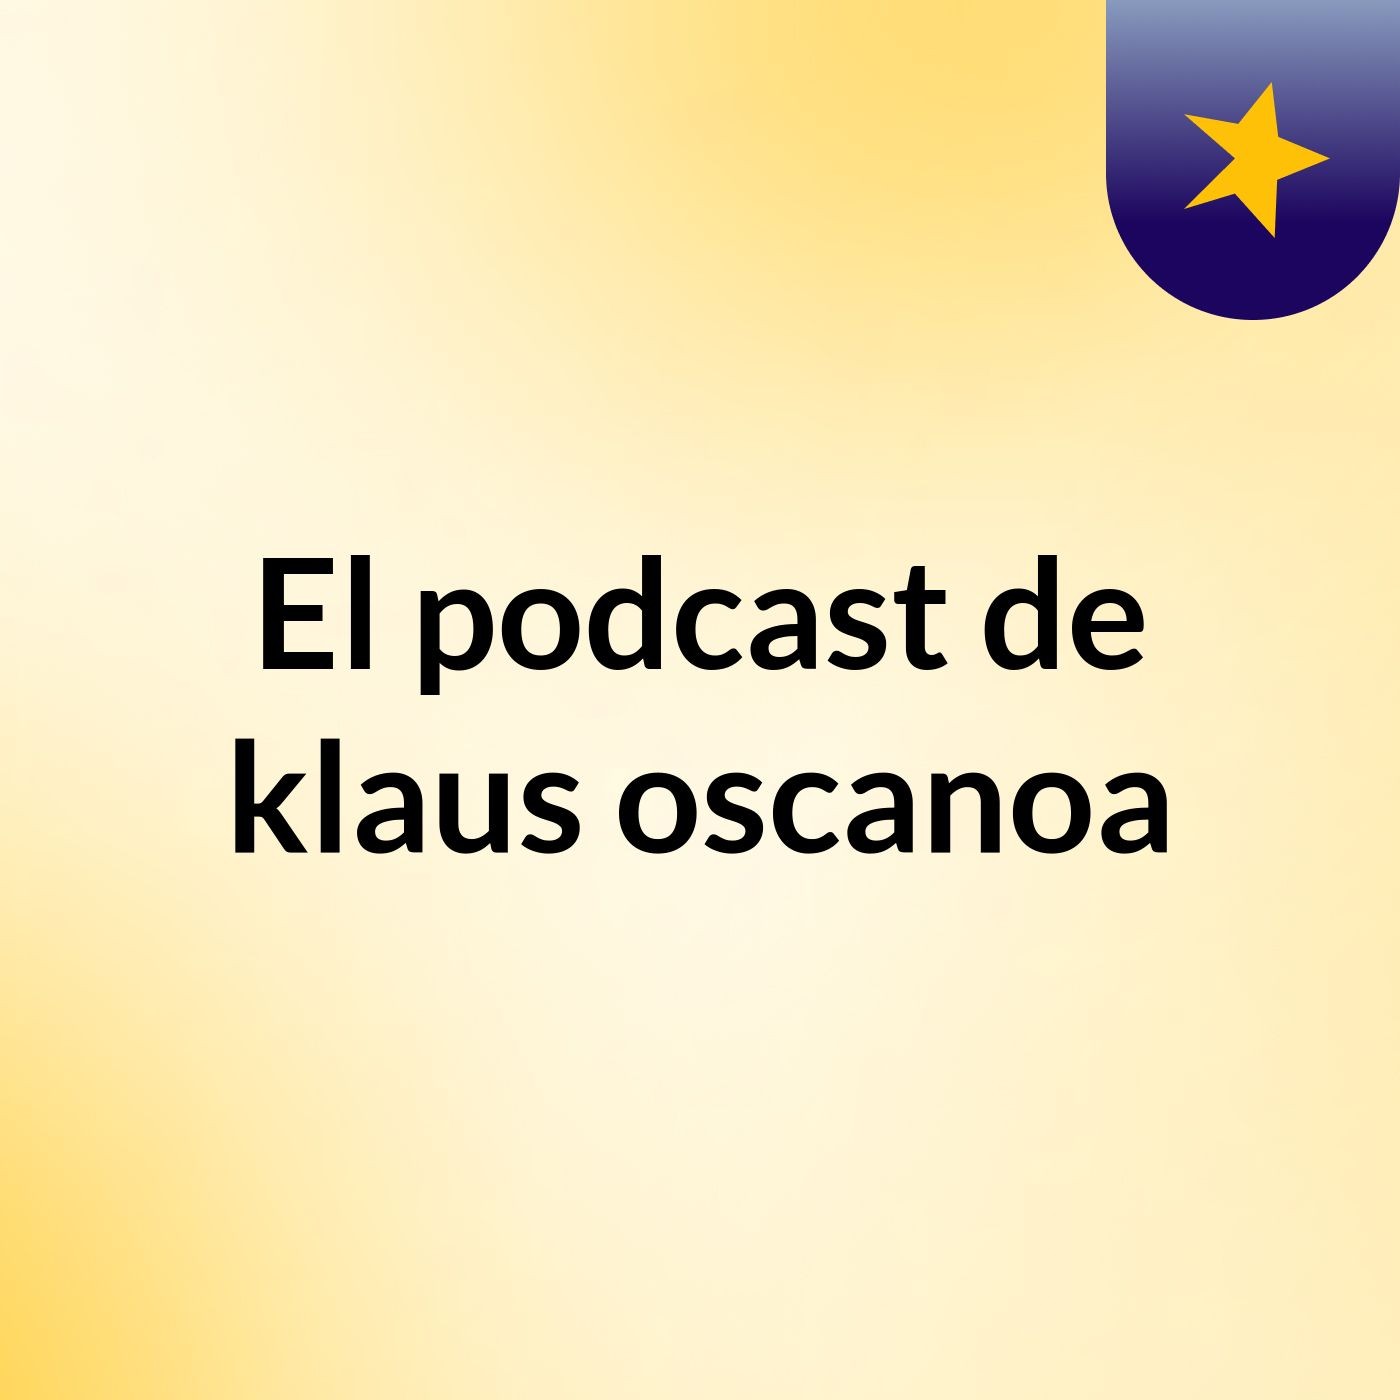 El podcast de klaus oscanoa